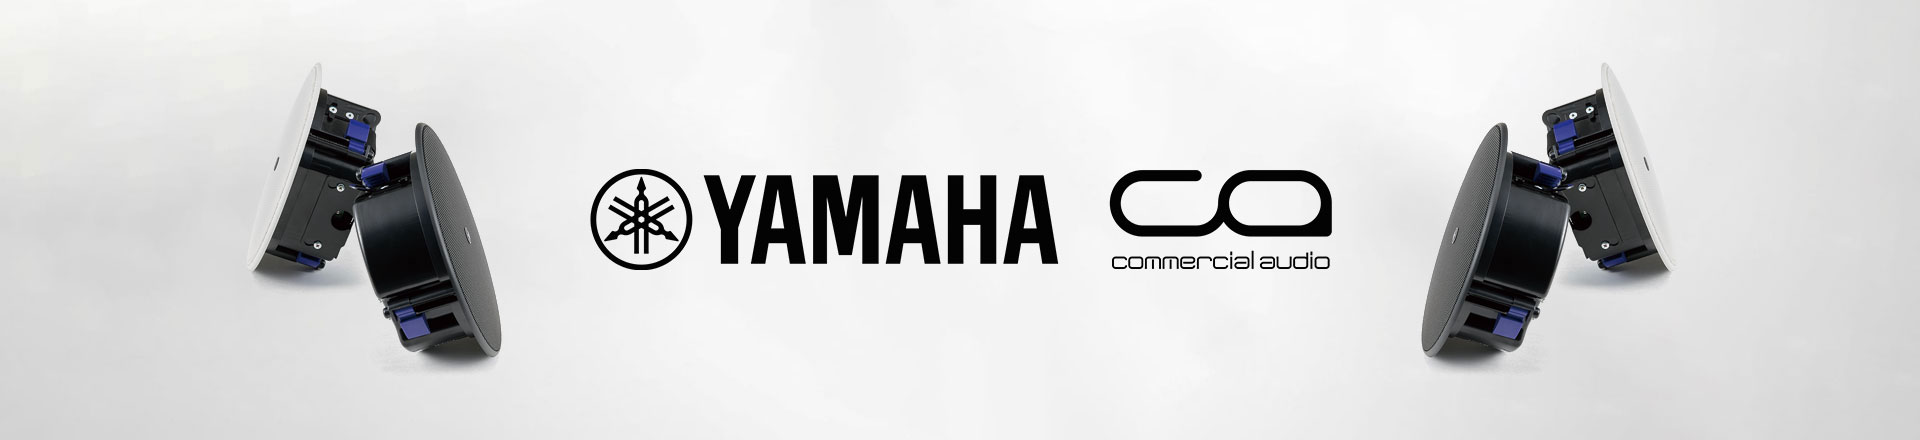 Yamaha "tworzy połączenia" podczas targów InfoComm'19